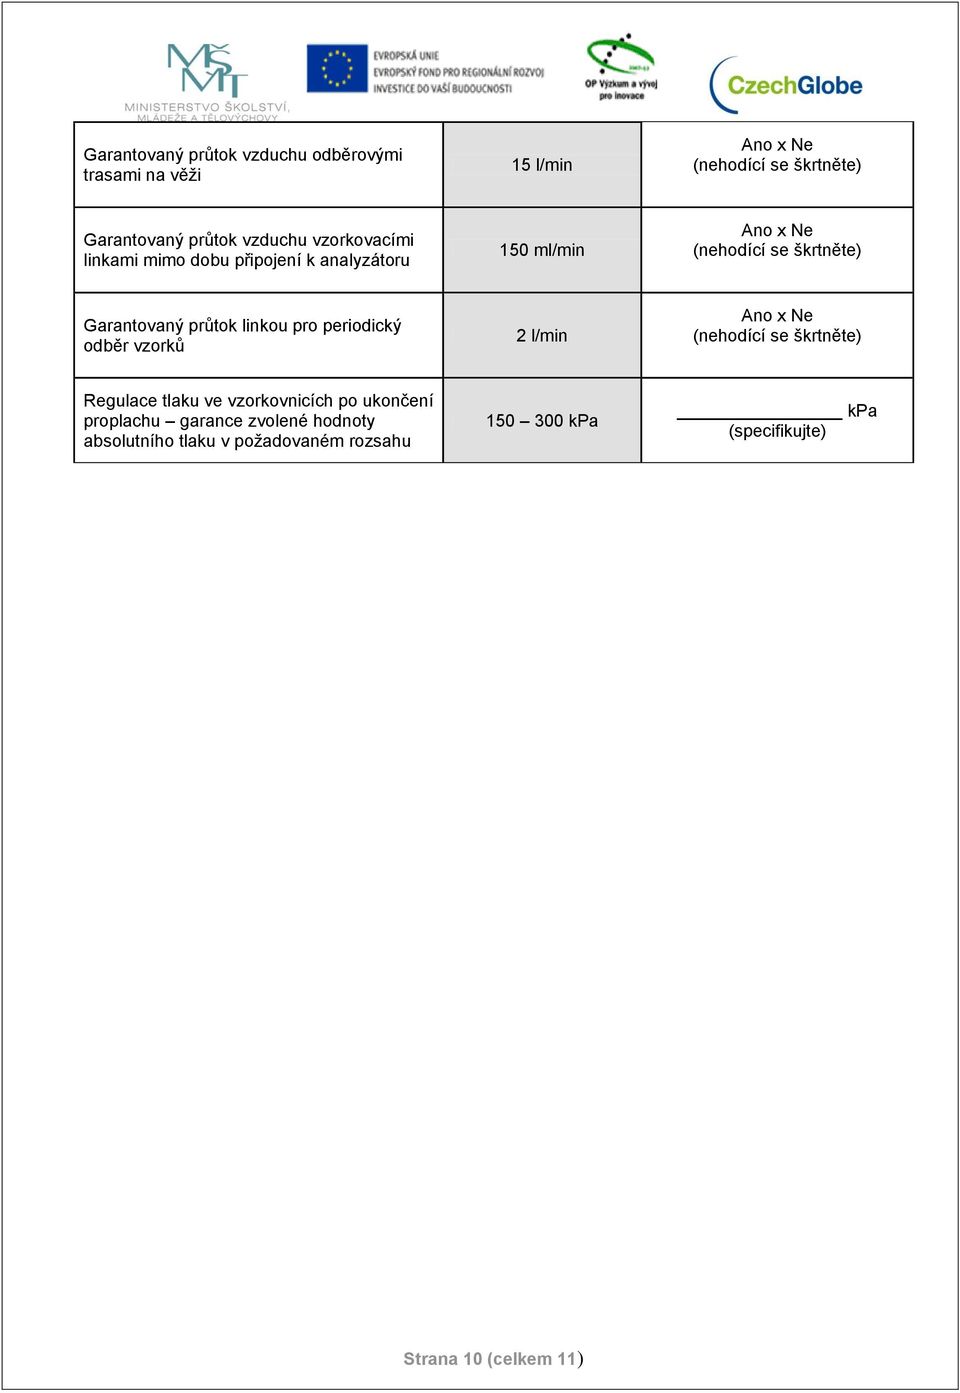 periodický odběr vzorků 2 l/min Regulace tlaku ve vzorkovnicích po ukončení proplachu garance